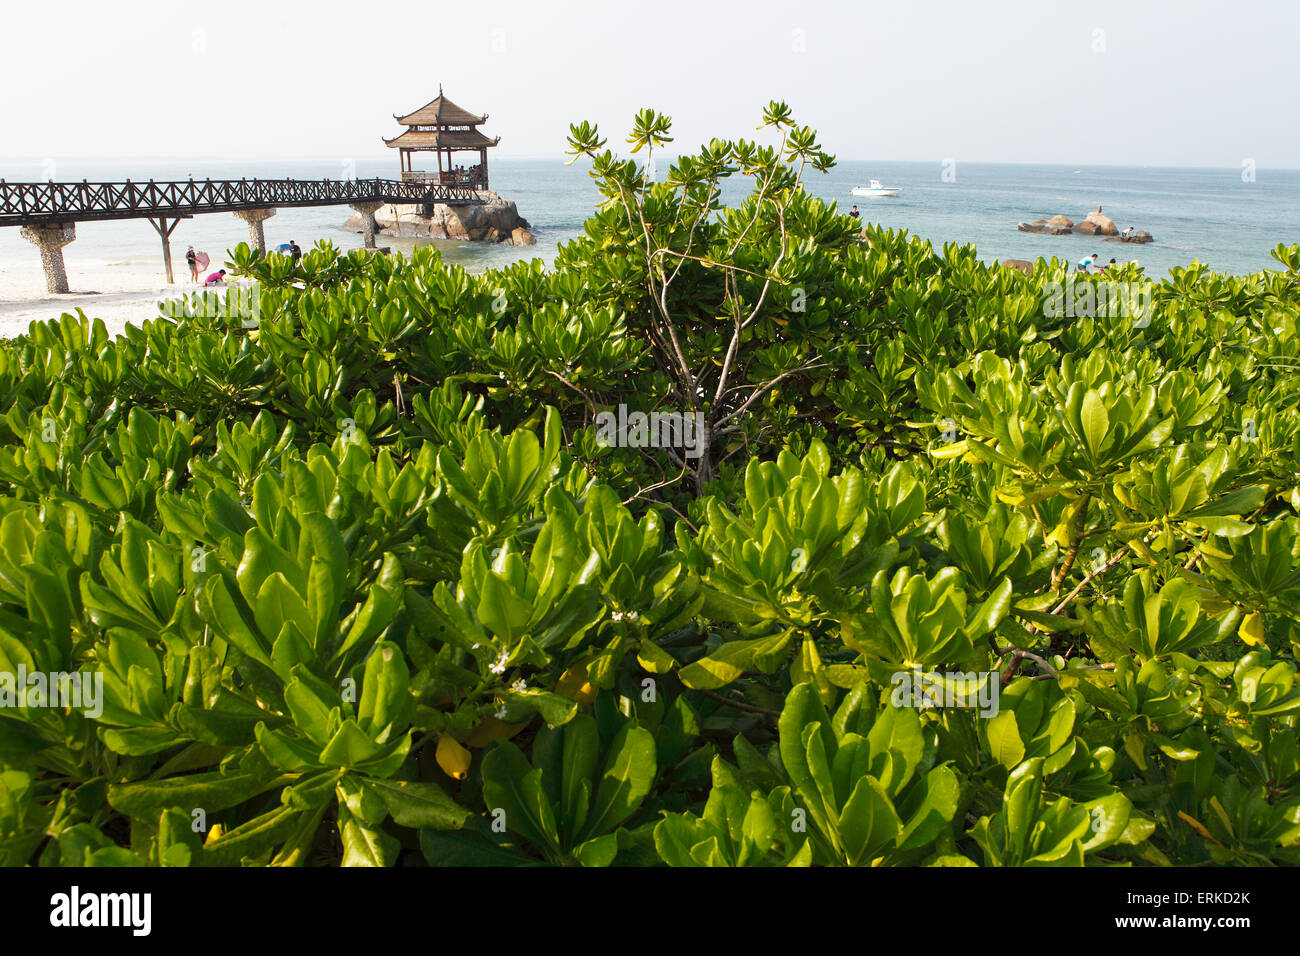 Pagoda on the beach, Wuzhizou Iceland, Hainan Province, China Stock Photo